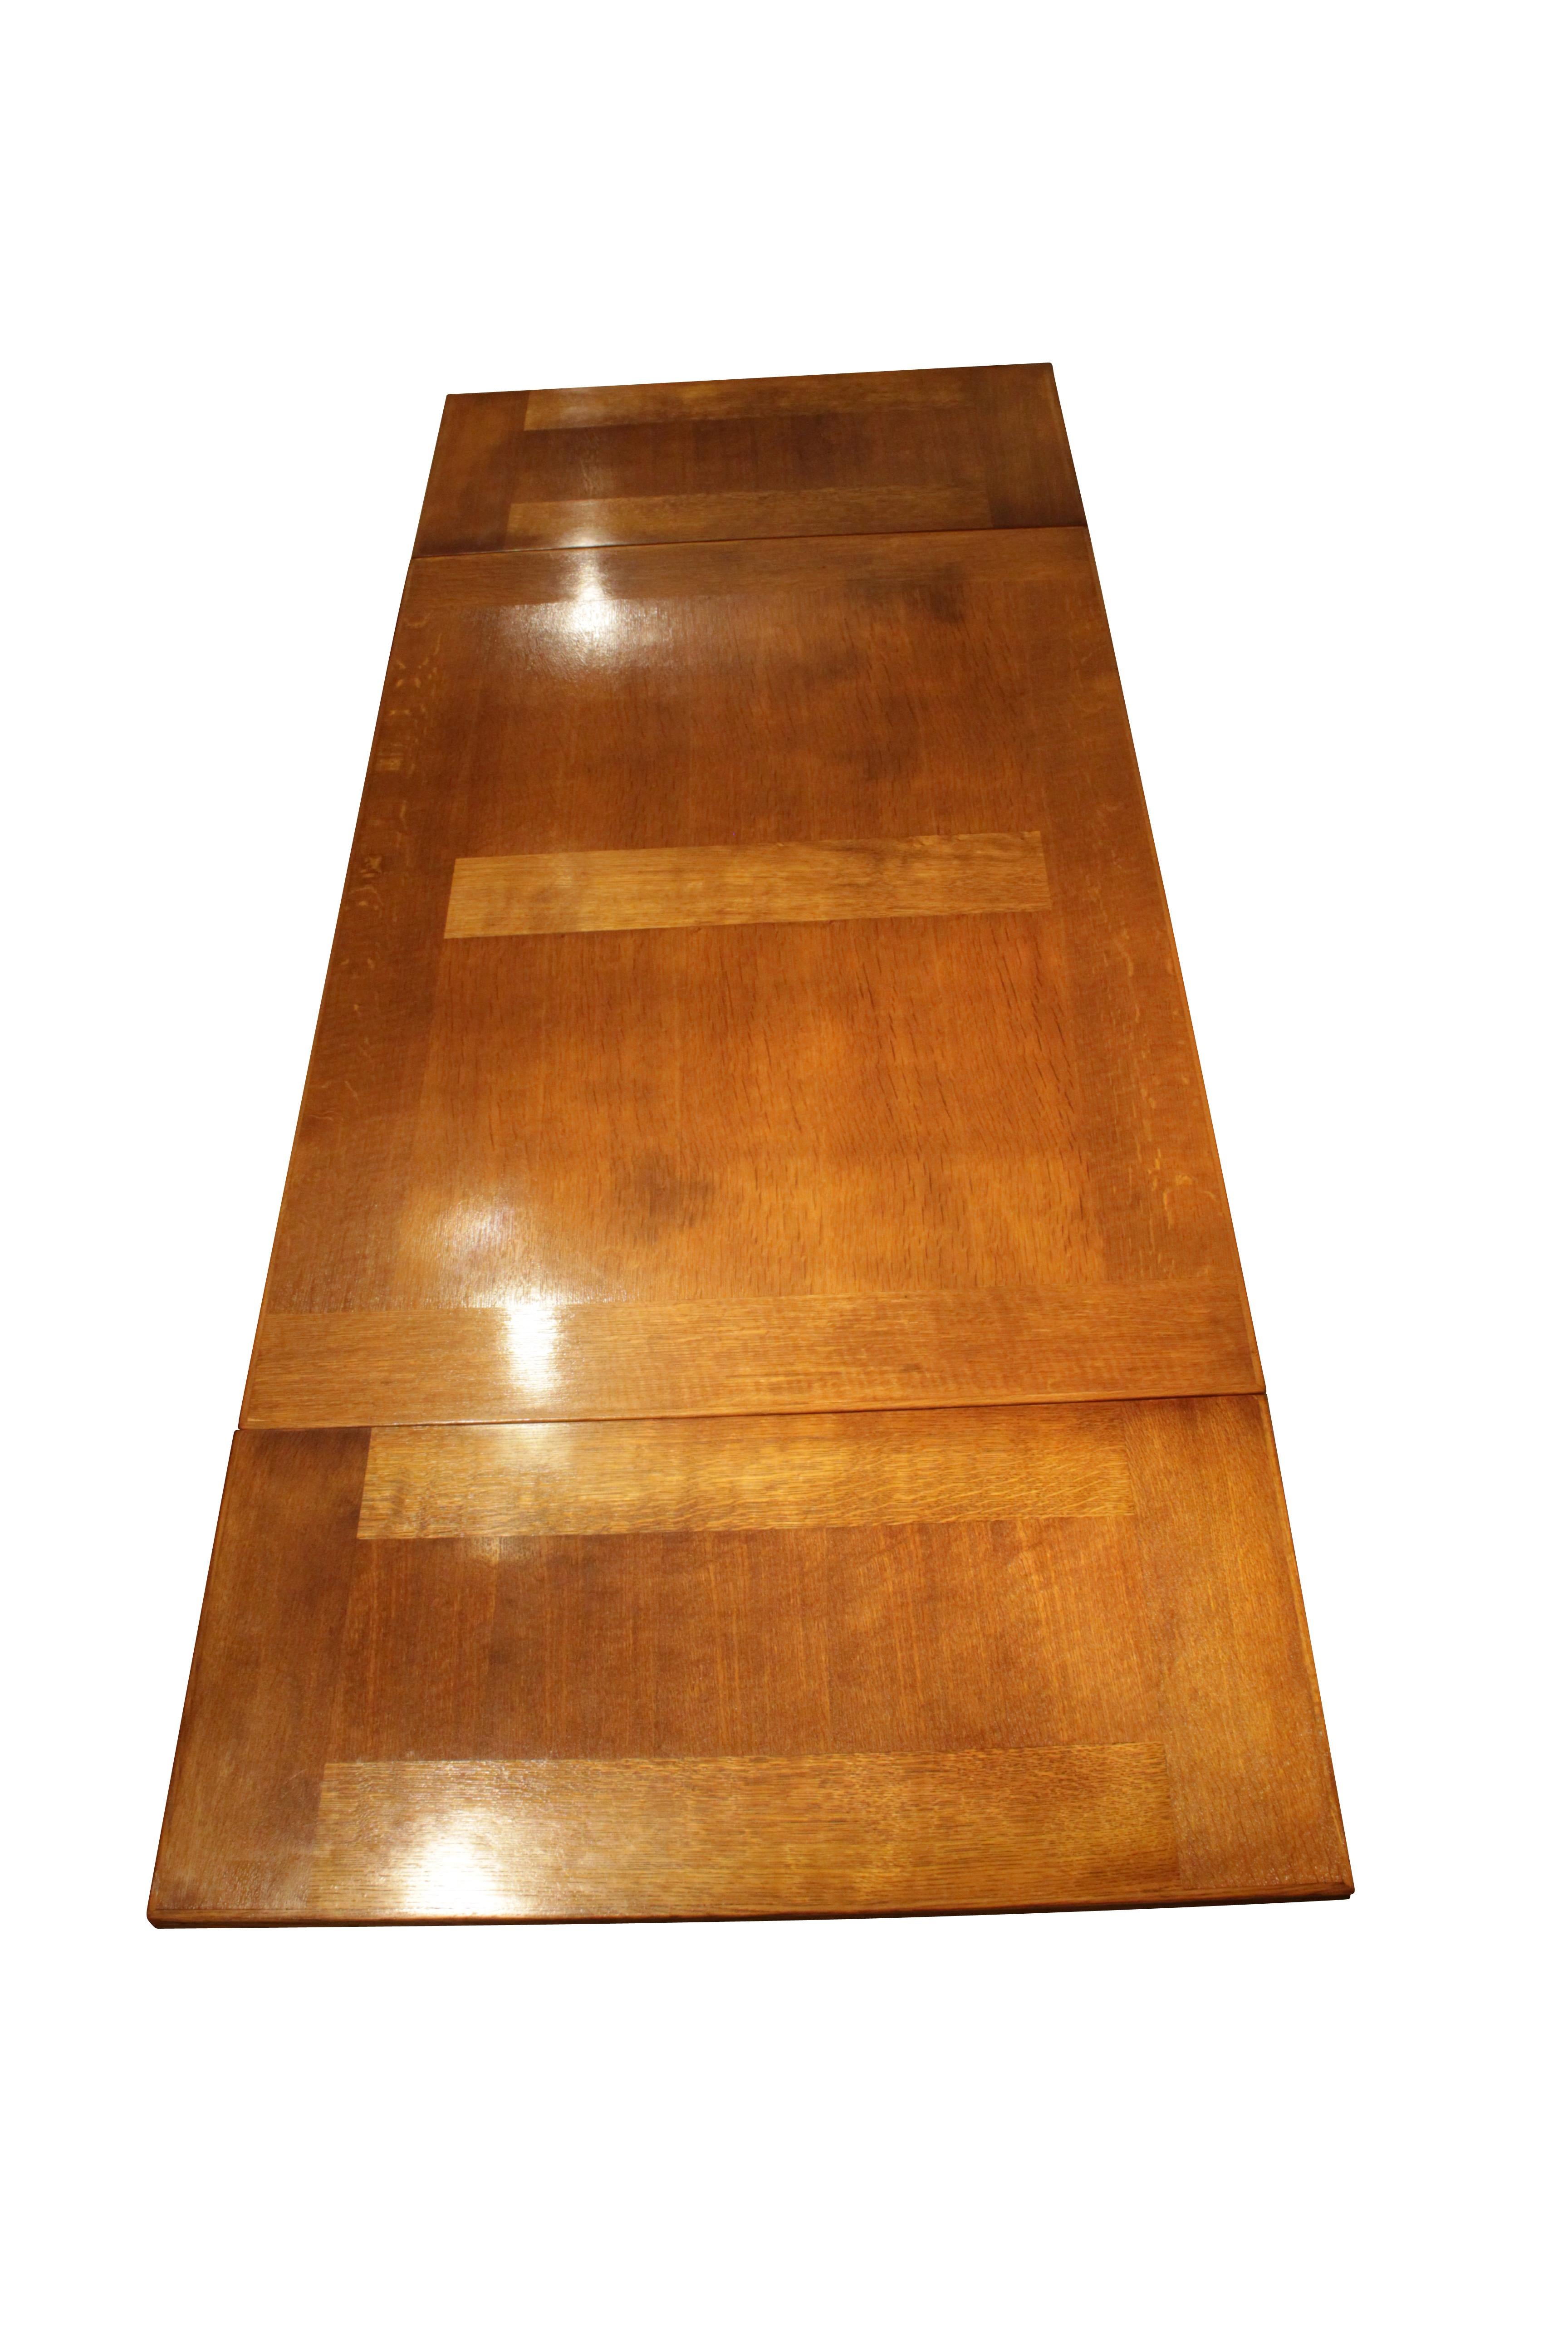 German Art Nouveau Oak Big Extendable Table For Sale